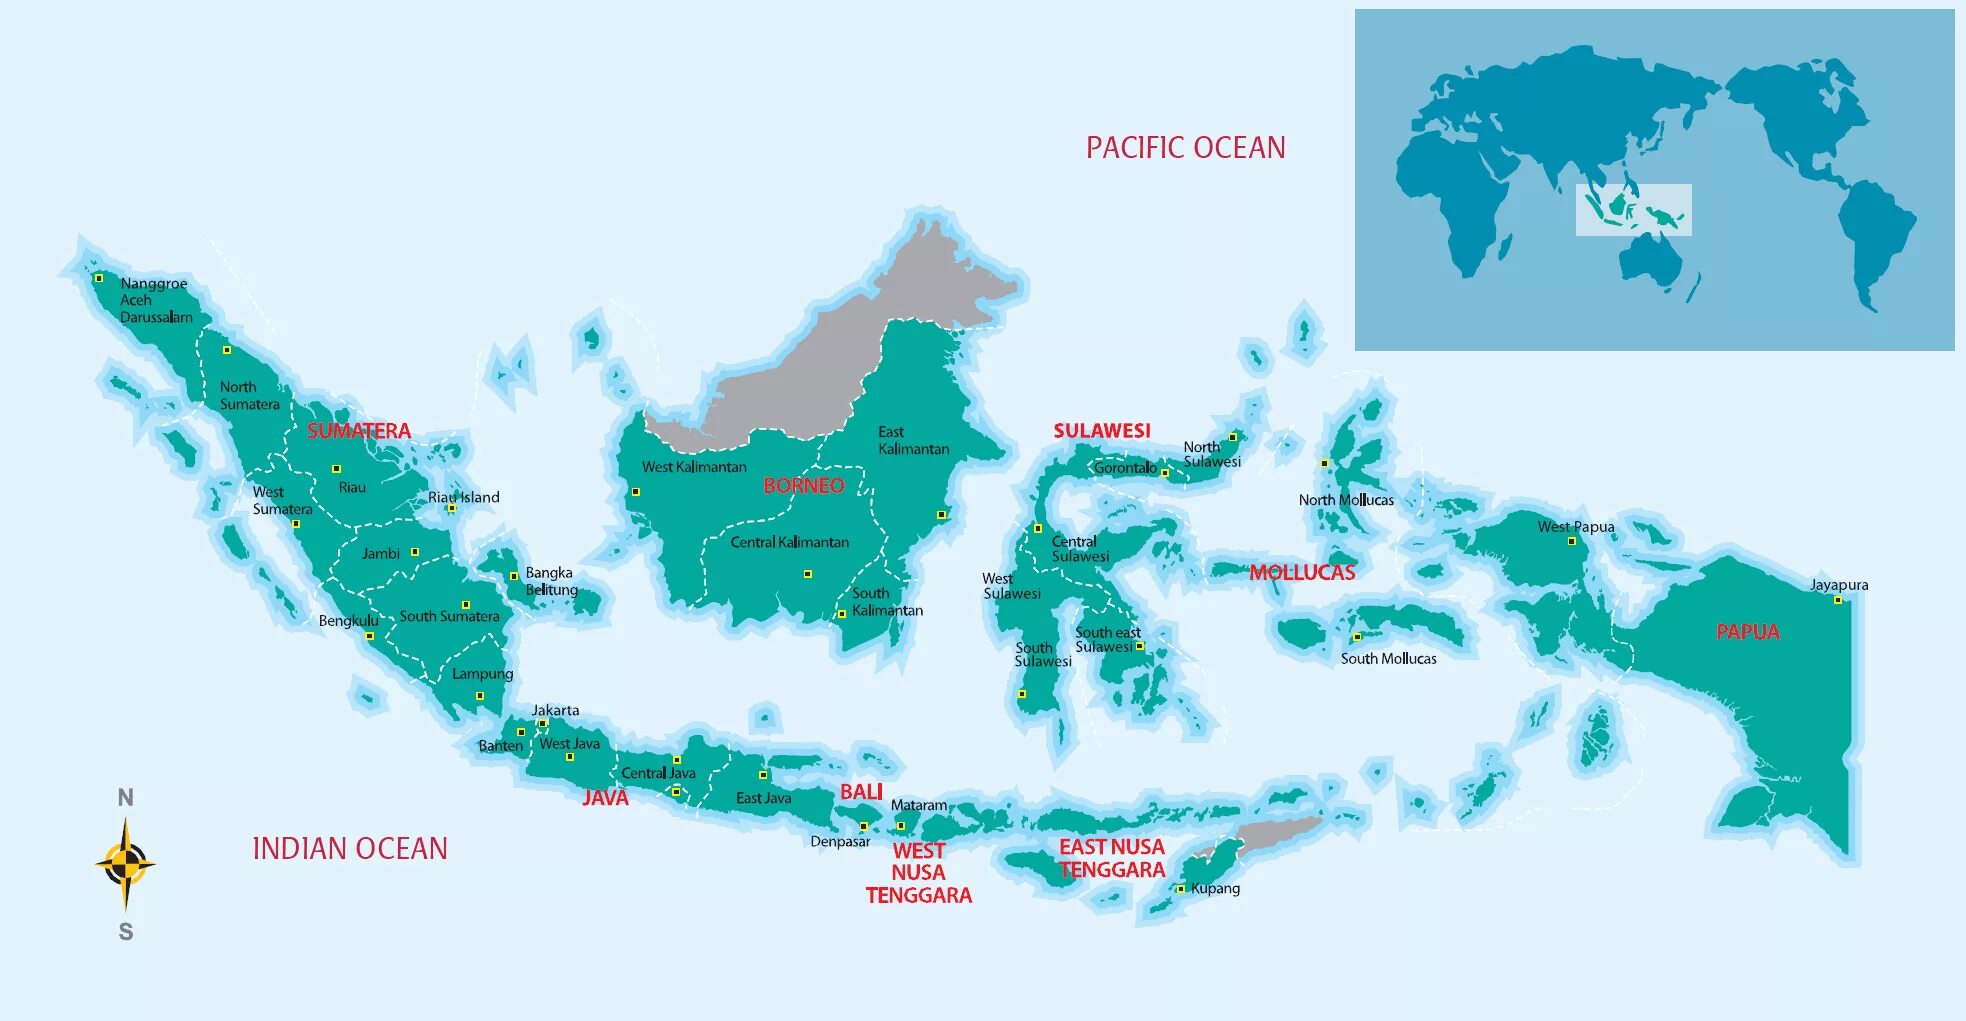 Острова Индонезии на карте. Столица Индонезии на карте. Большие Зондские острова на карте. Карта Индонезии на русском языке.